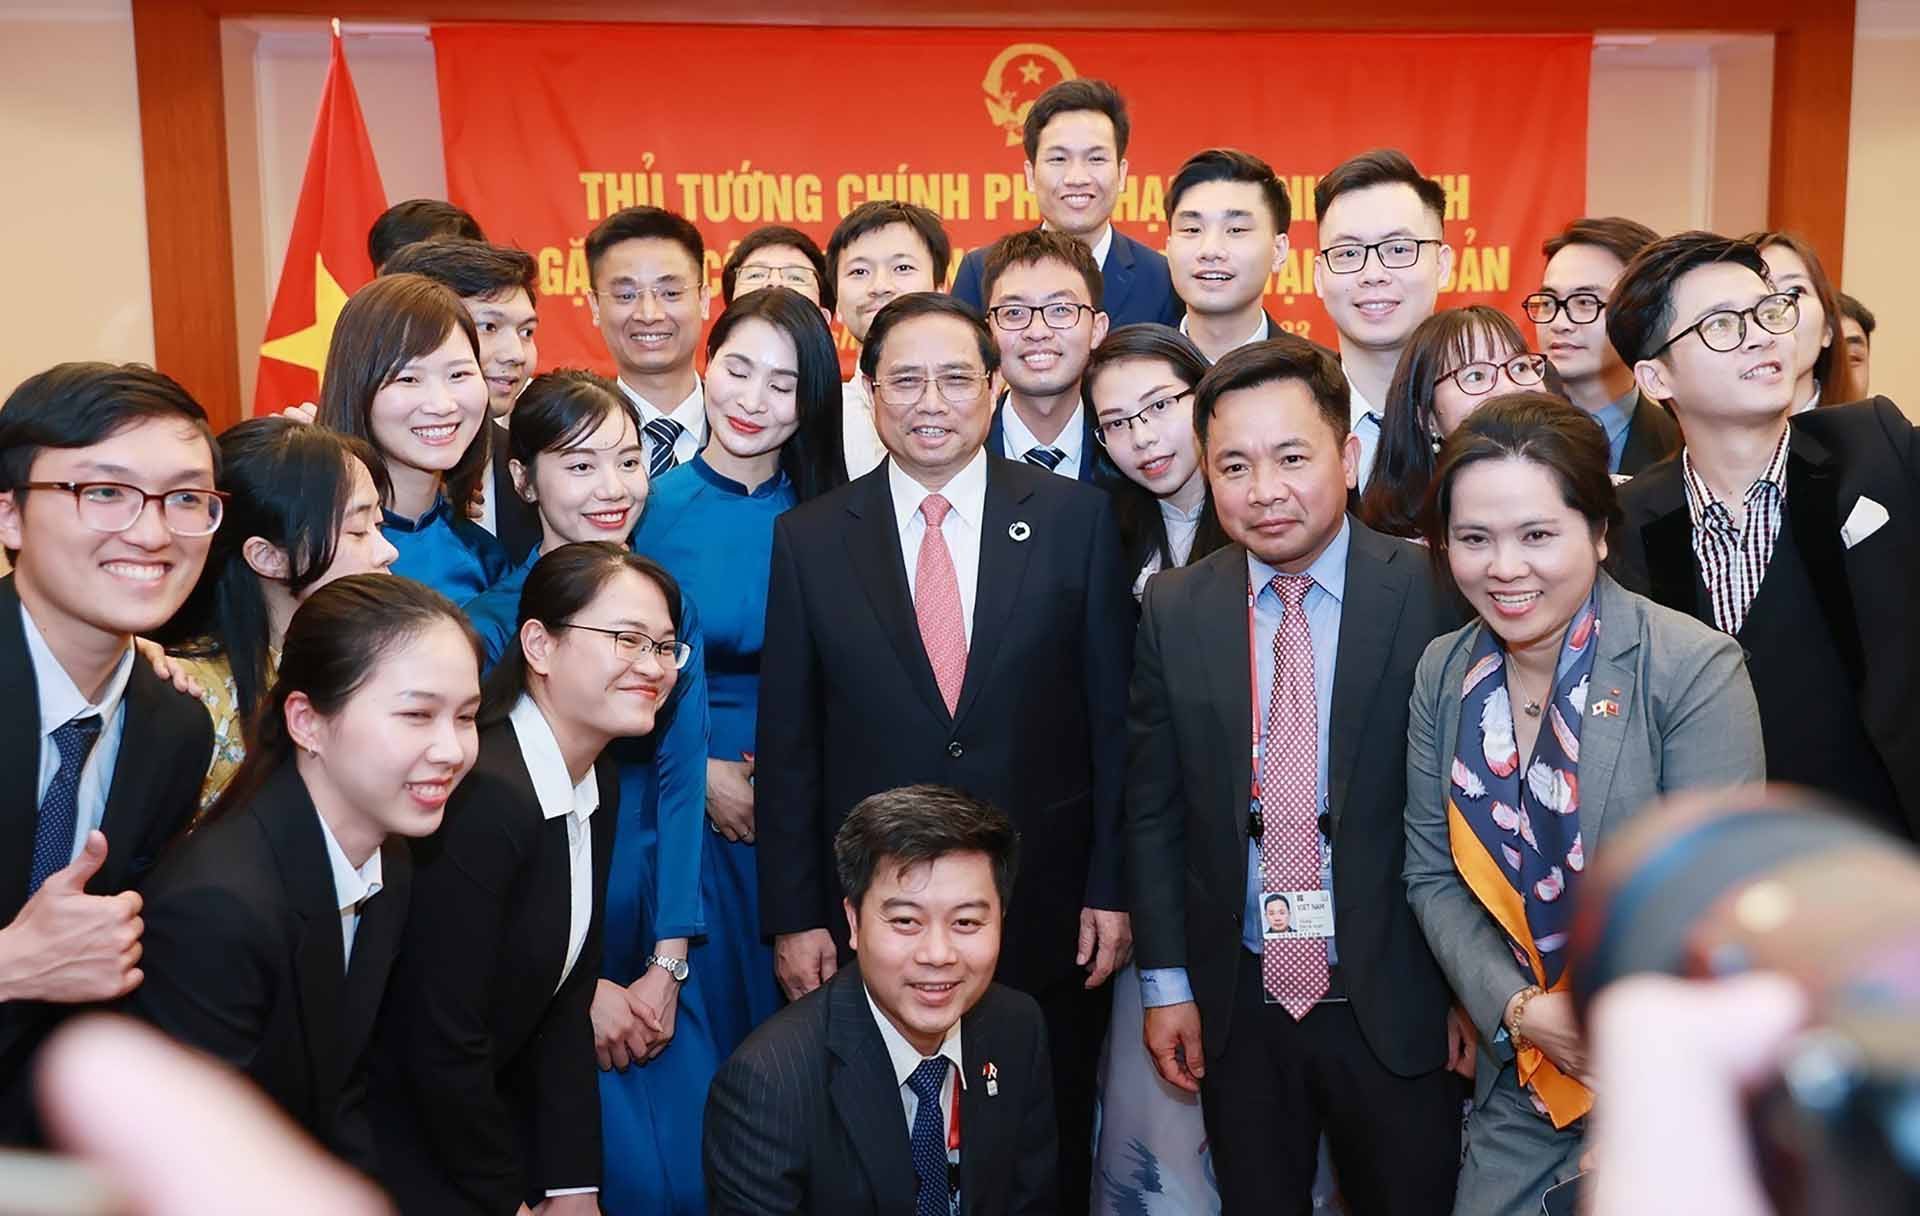 Bộ trưởng Bùi Thanh Sơn: Chuyến công tác của Thủ tướng thành công tốt đẹp cả trên phương diện đa phương và song phương